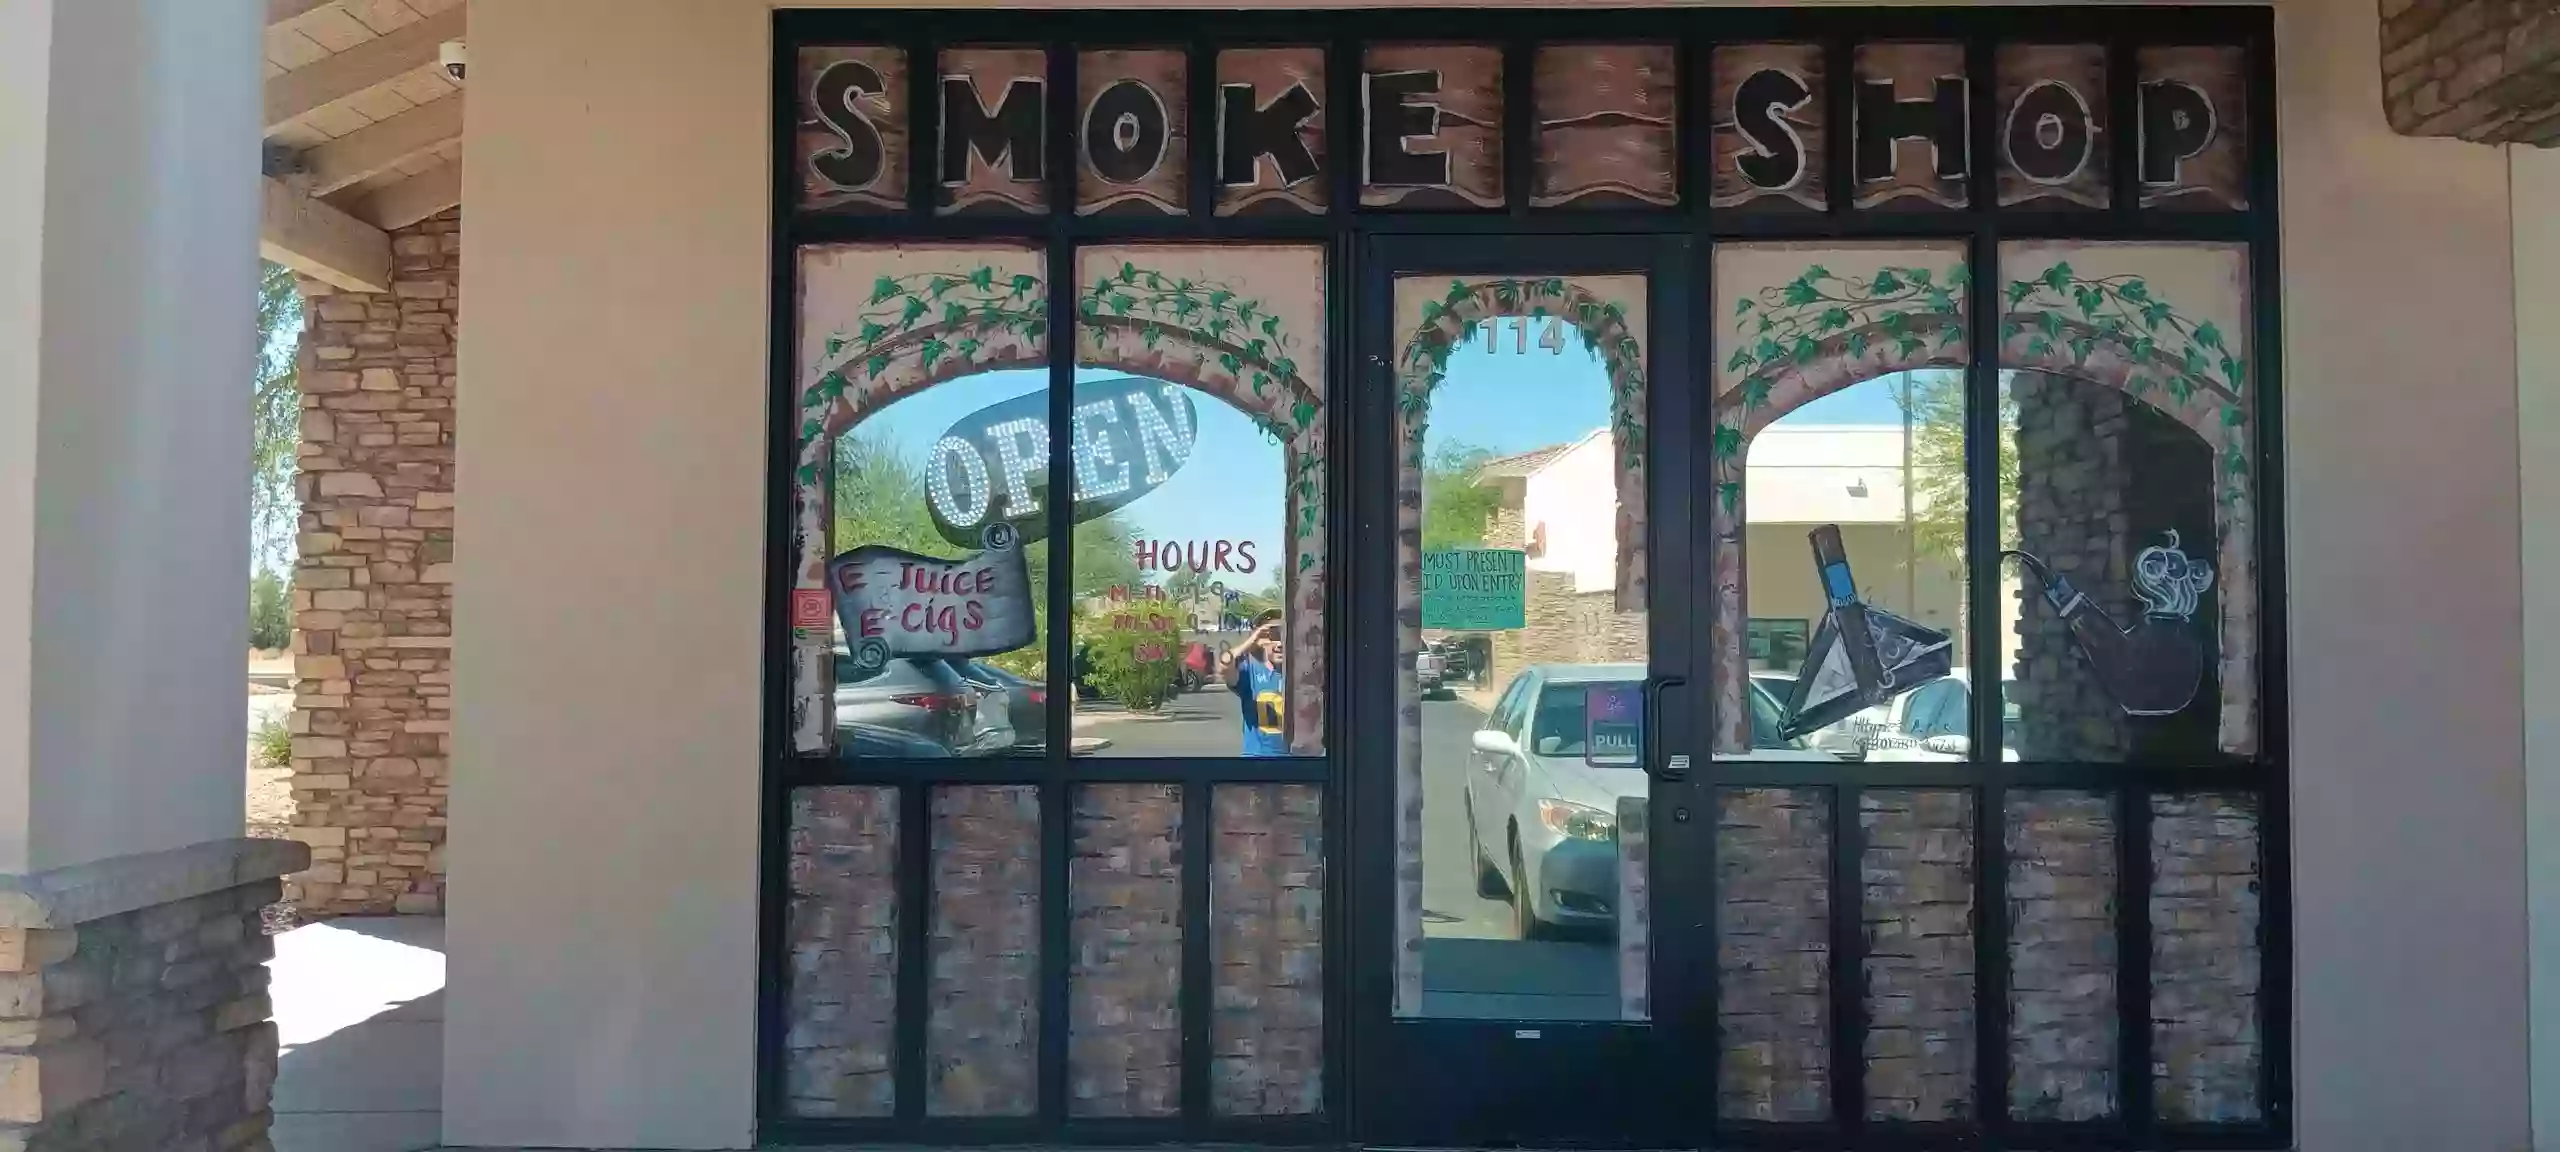 The Smokers Edge Smoke and Vape Shop